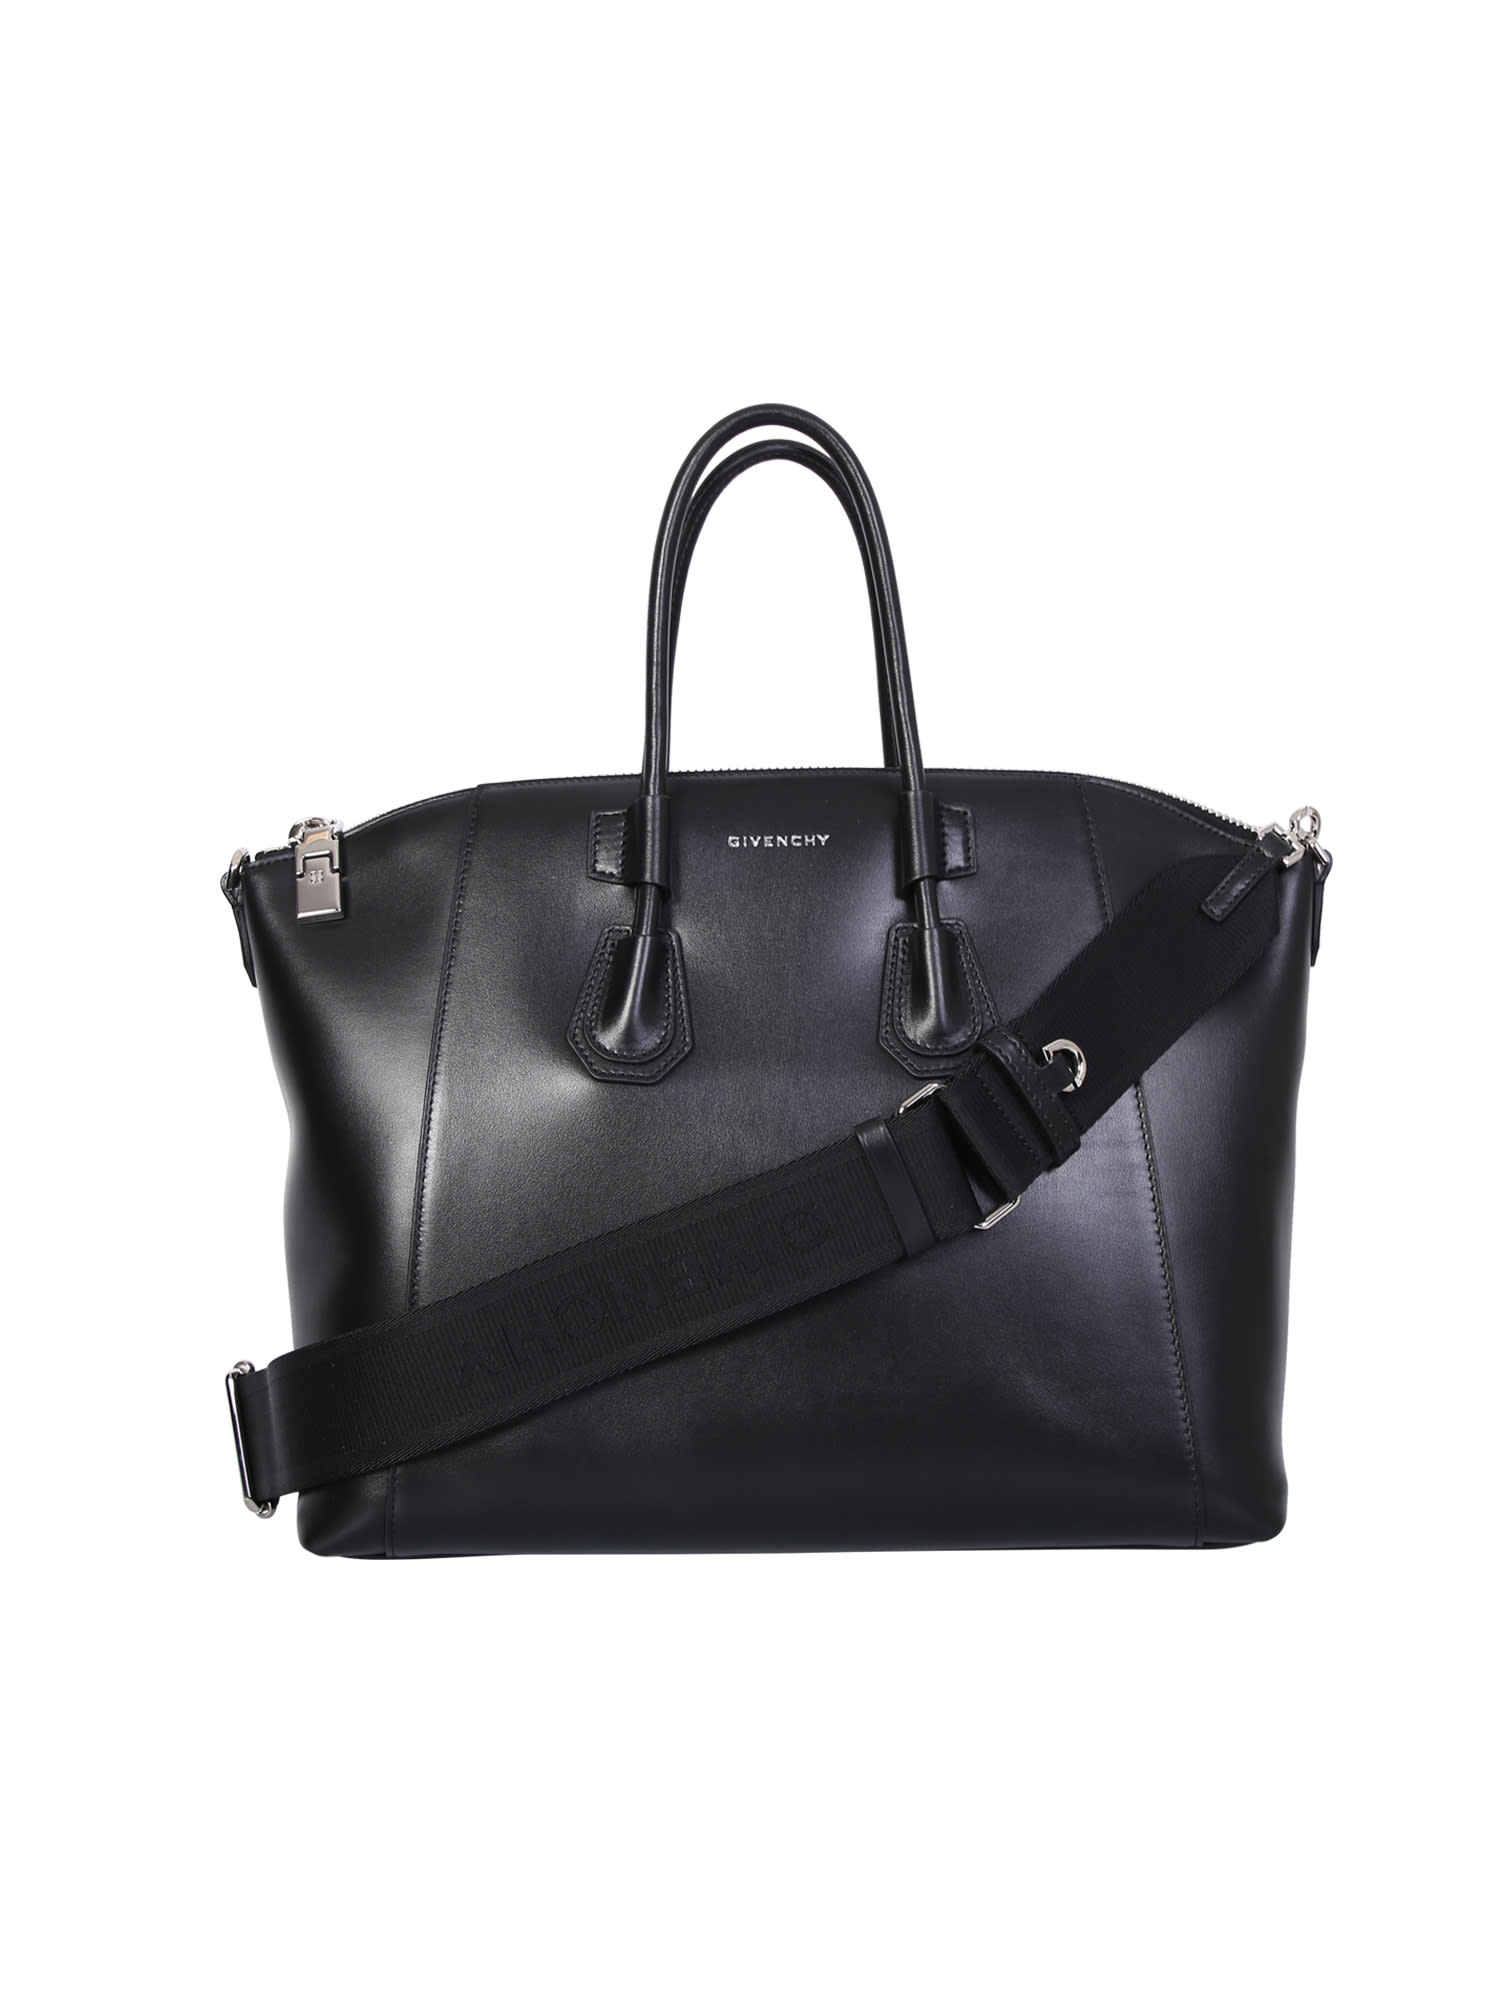 Givenchy Antigona Sport Bag